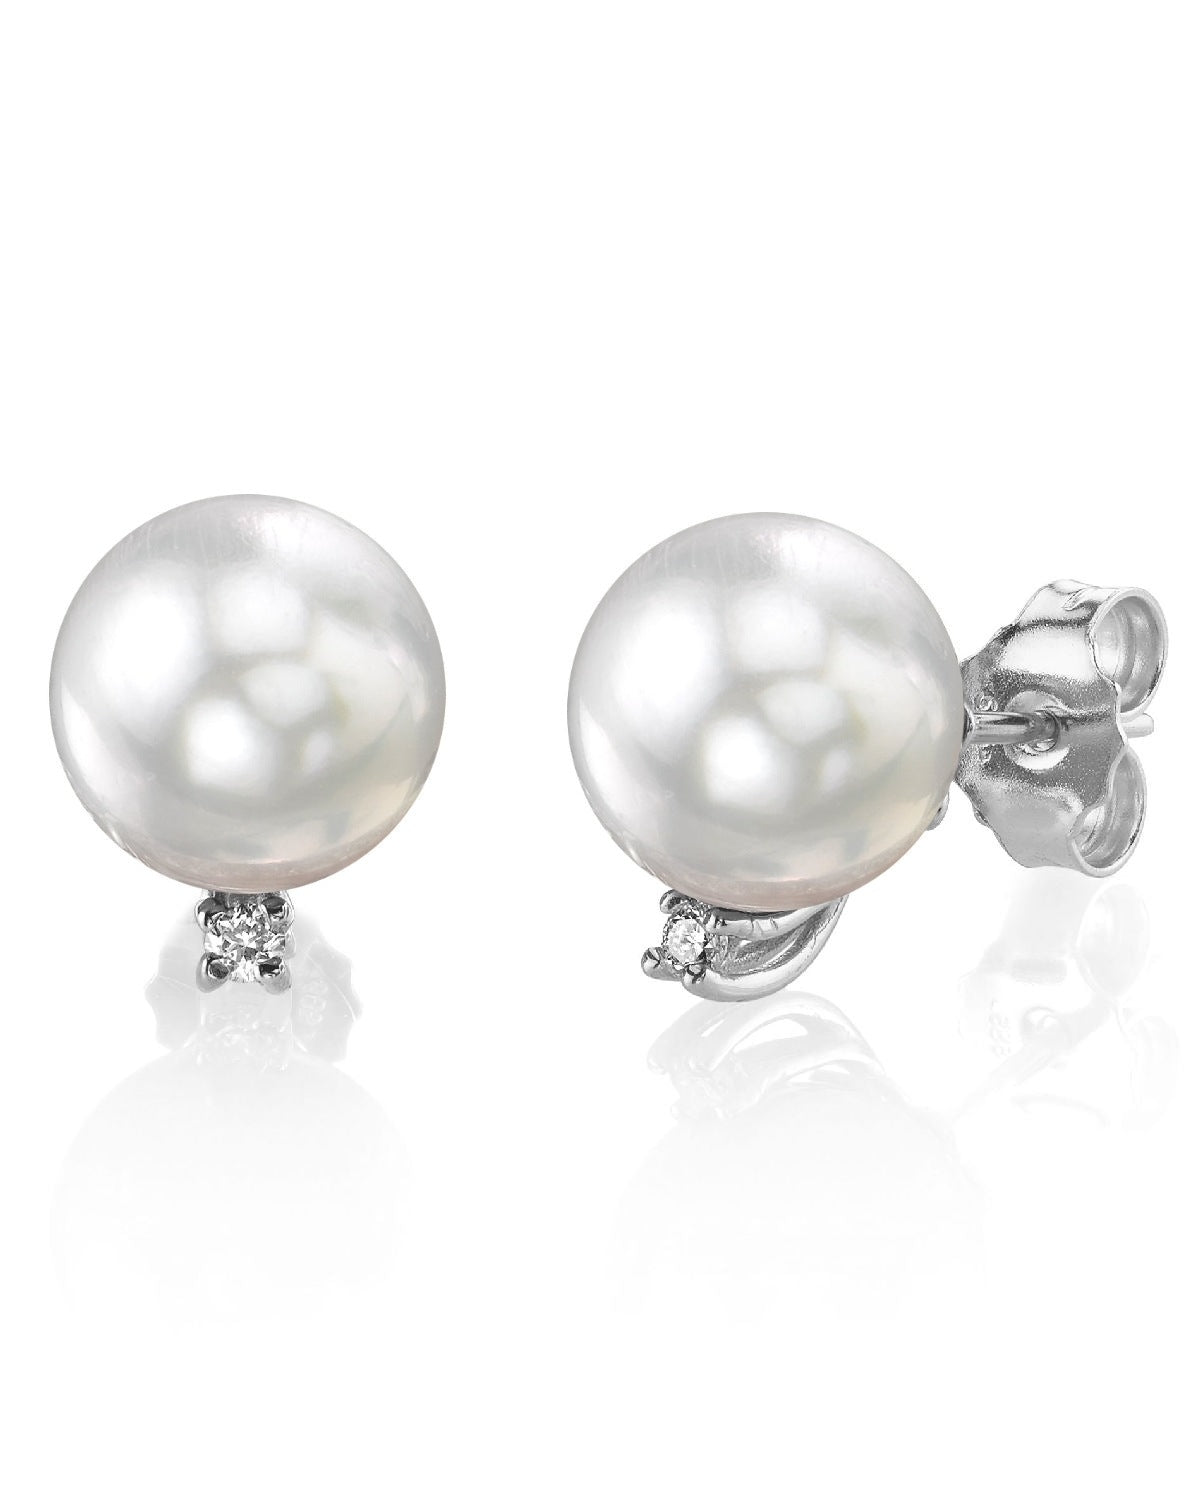 White South Sea Pearl & Diamond Sasha Earrings